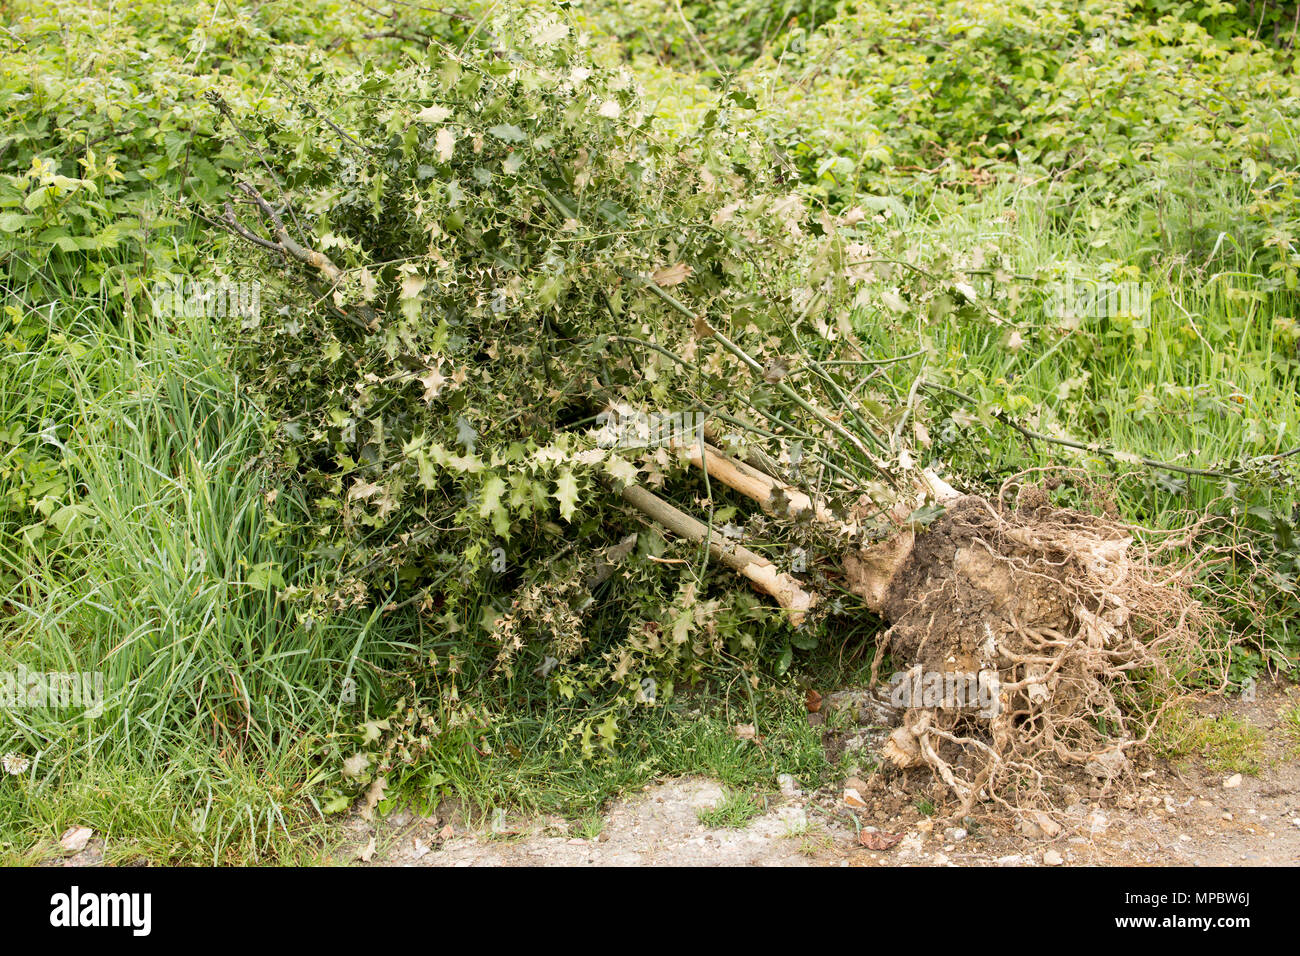 Eine entwurzelte Holly Tree oder holly bush, Ilex aquifolium, in einem layby in Dorset England UK GB entleert. Stockfoto